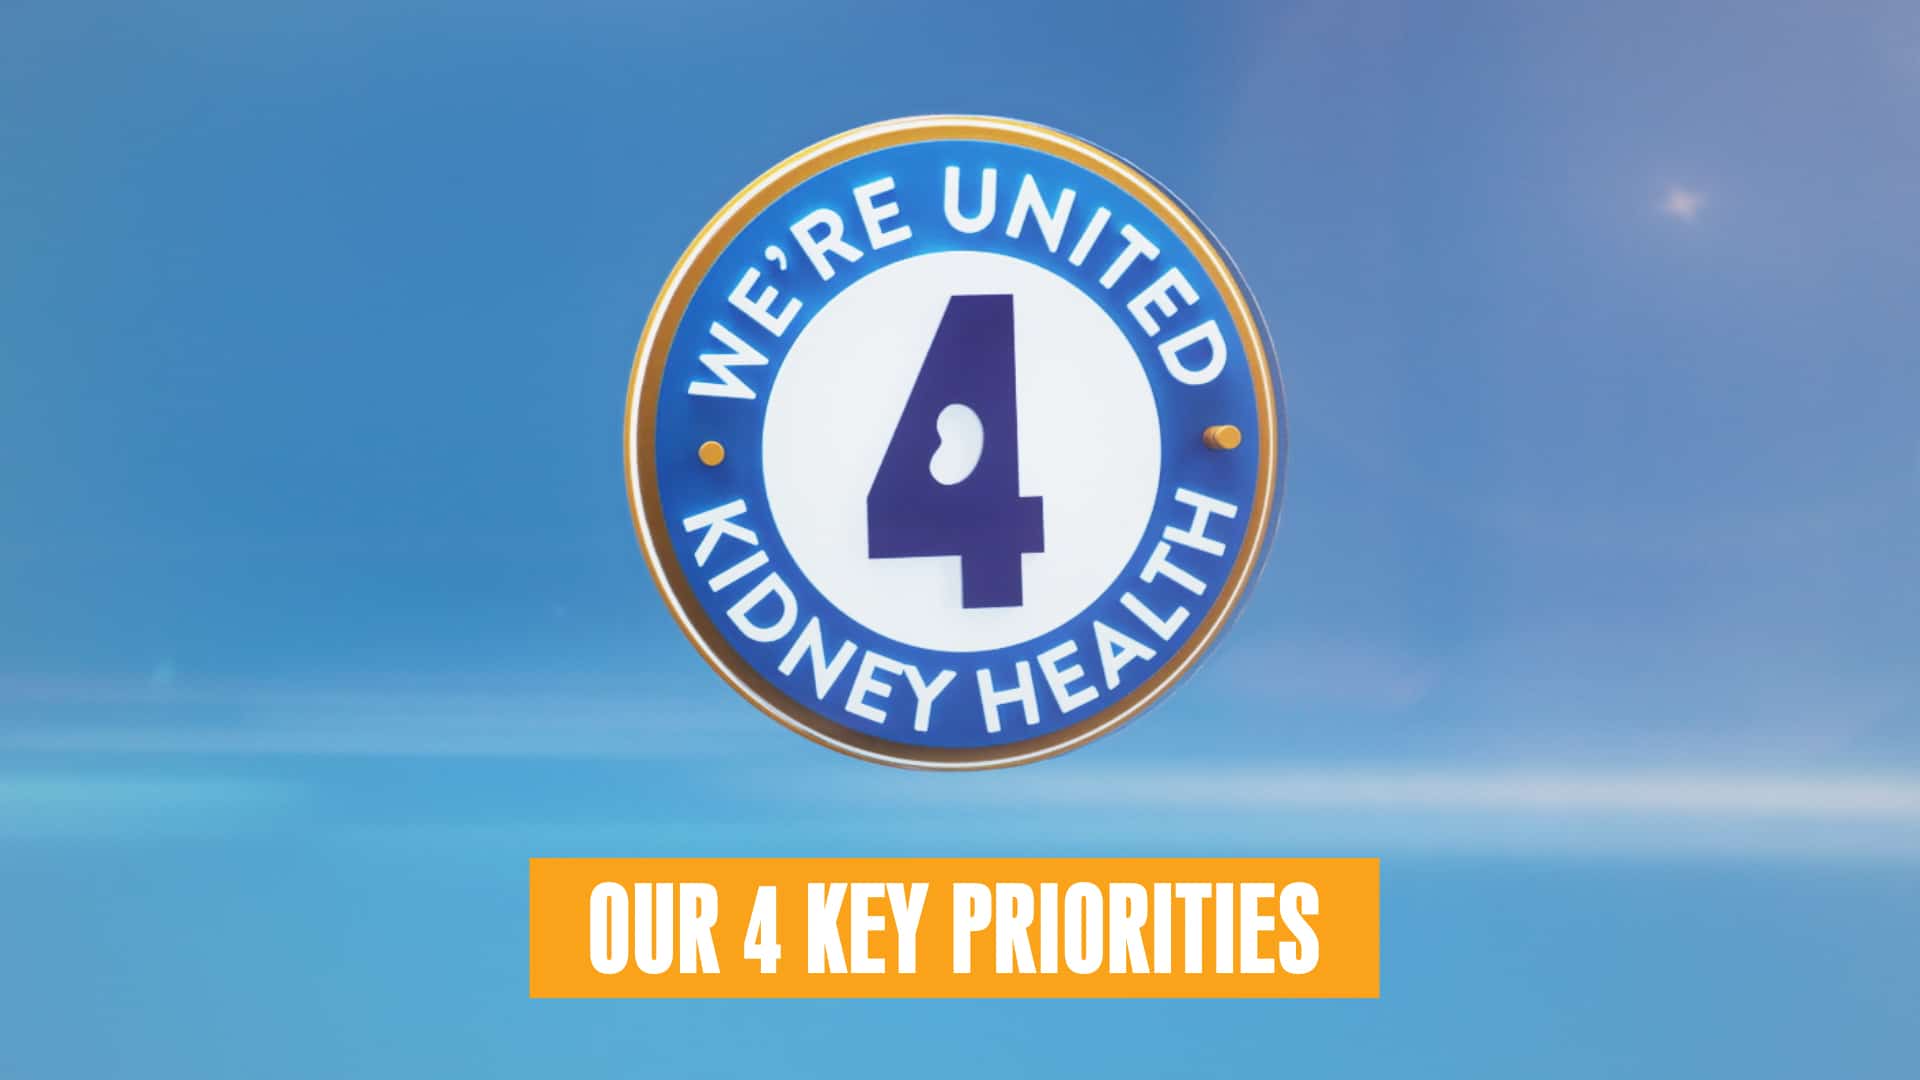 We’re United 4 Kidney Health